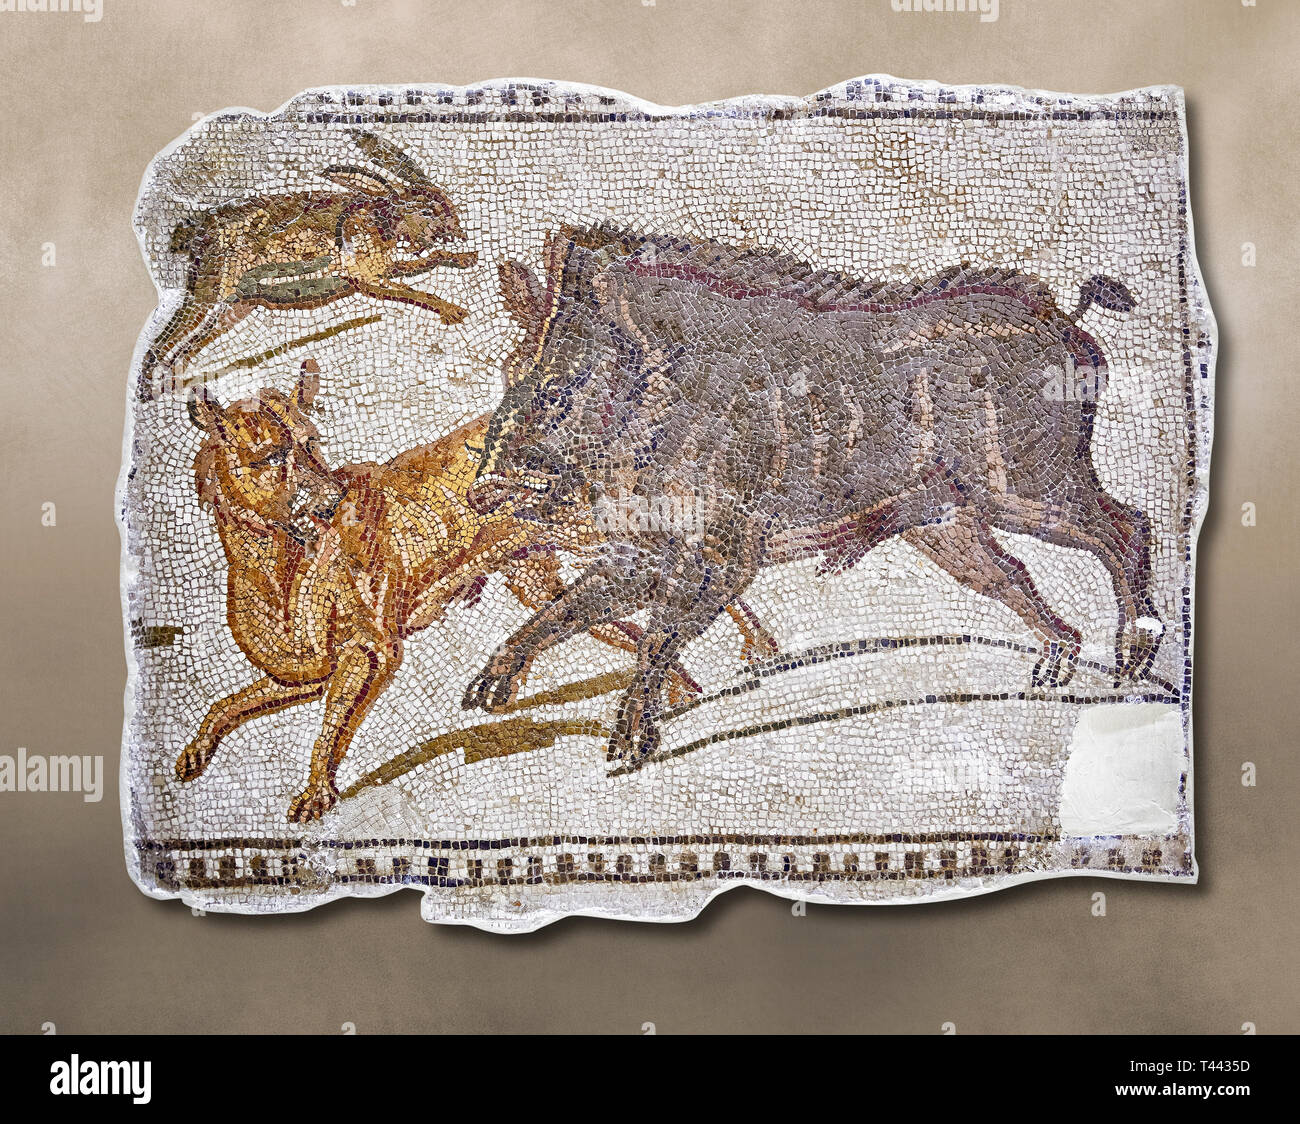 Première moitié du 3e siècle mosaïque romaine inscription un sanglier et lièvre chasse. D'Hadrumetum (Sousse), Tunisie. Le Musée du Bardo, Tunis, Tunis Banque D'Images